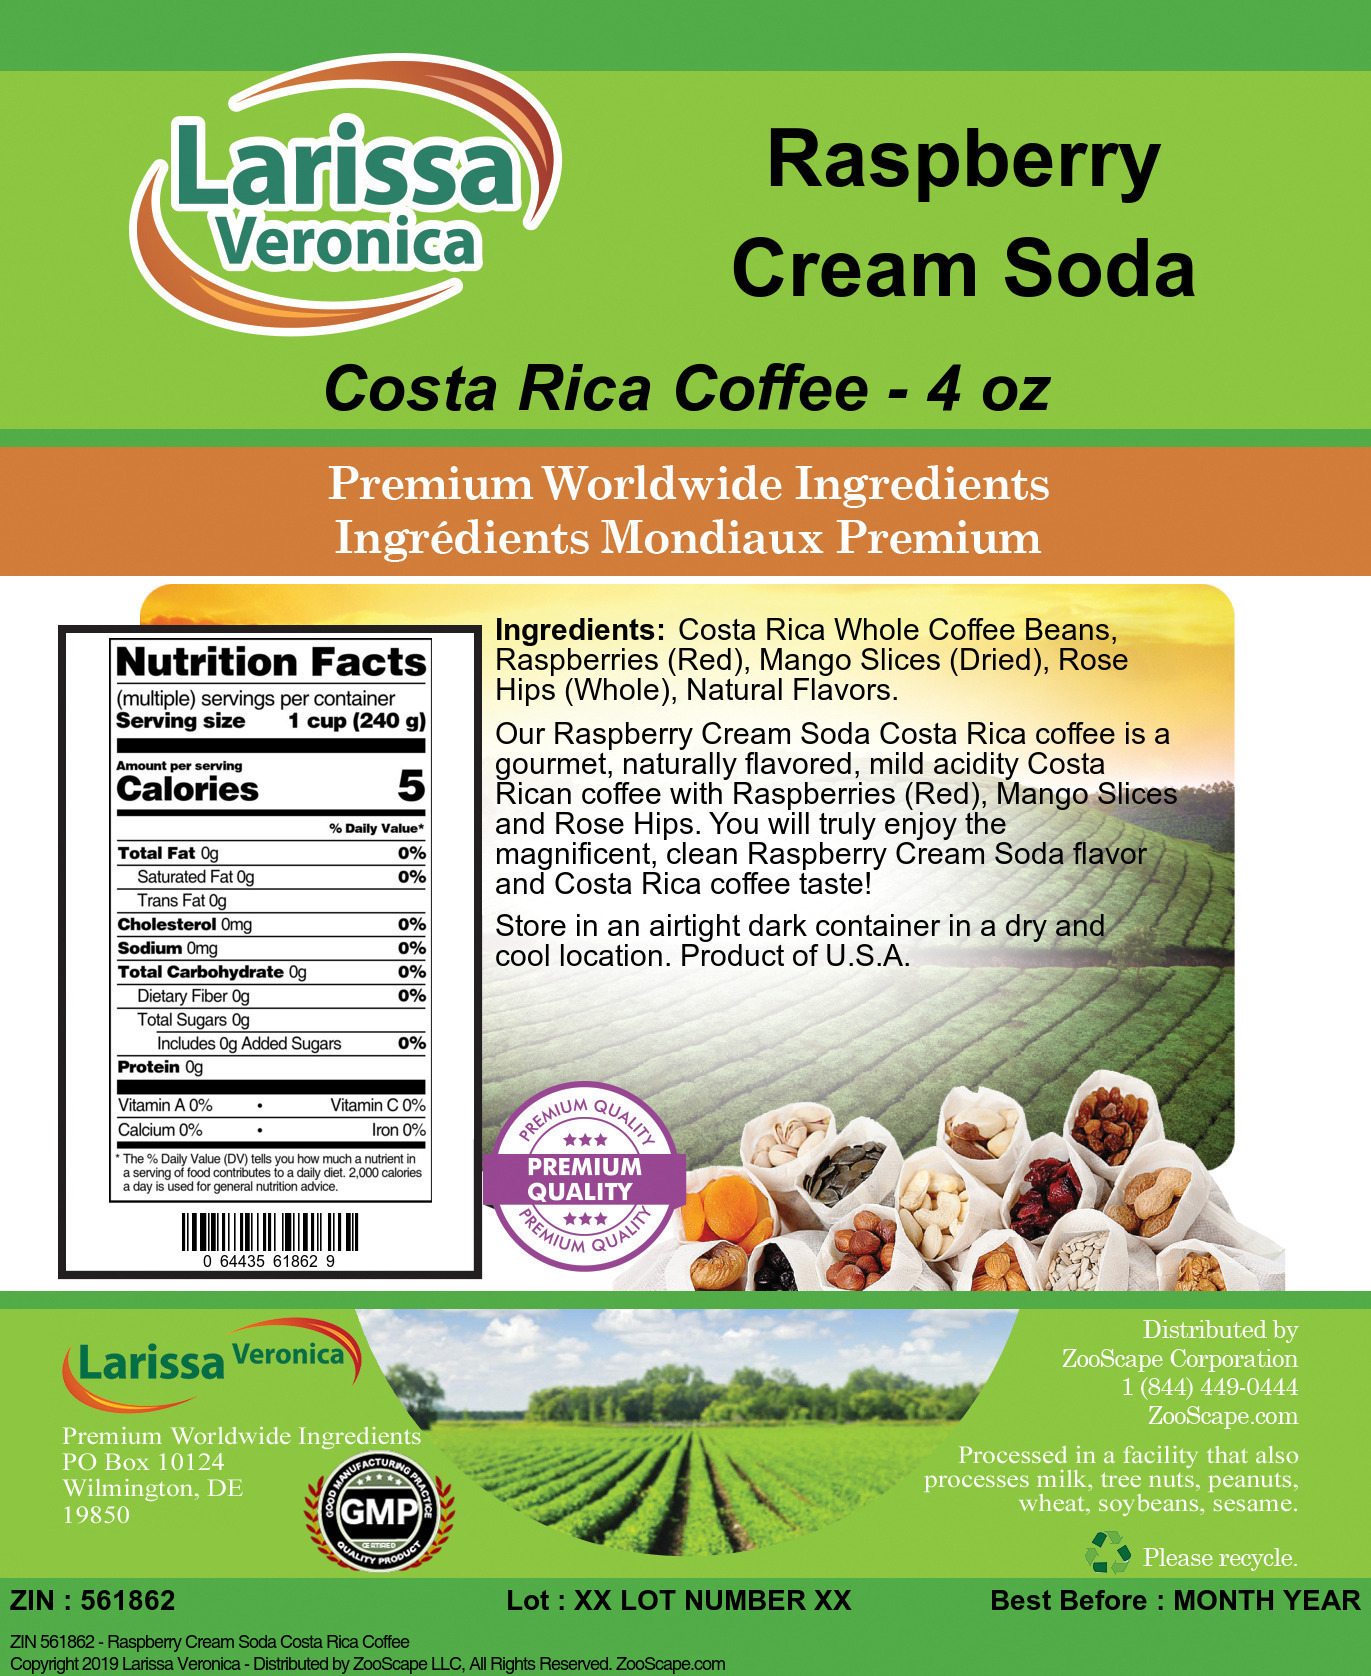 Raspberry Cream Soda Costa Rica Coffee - Label